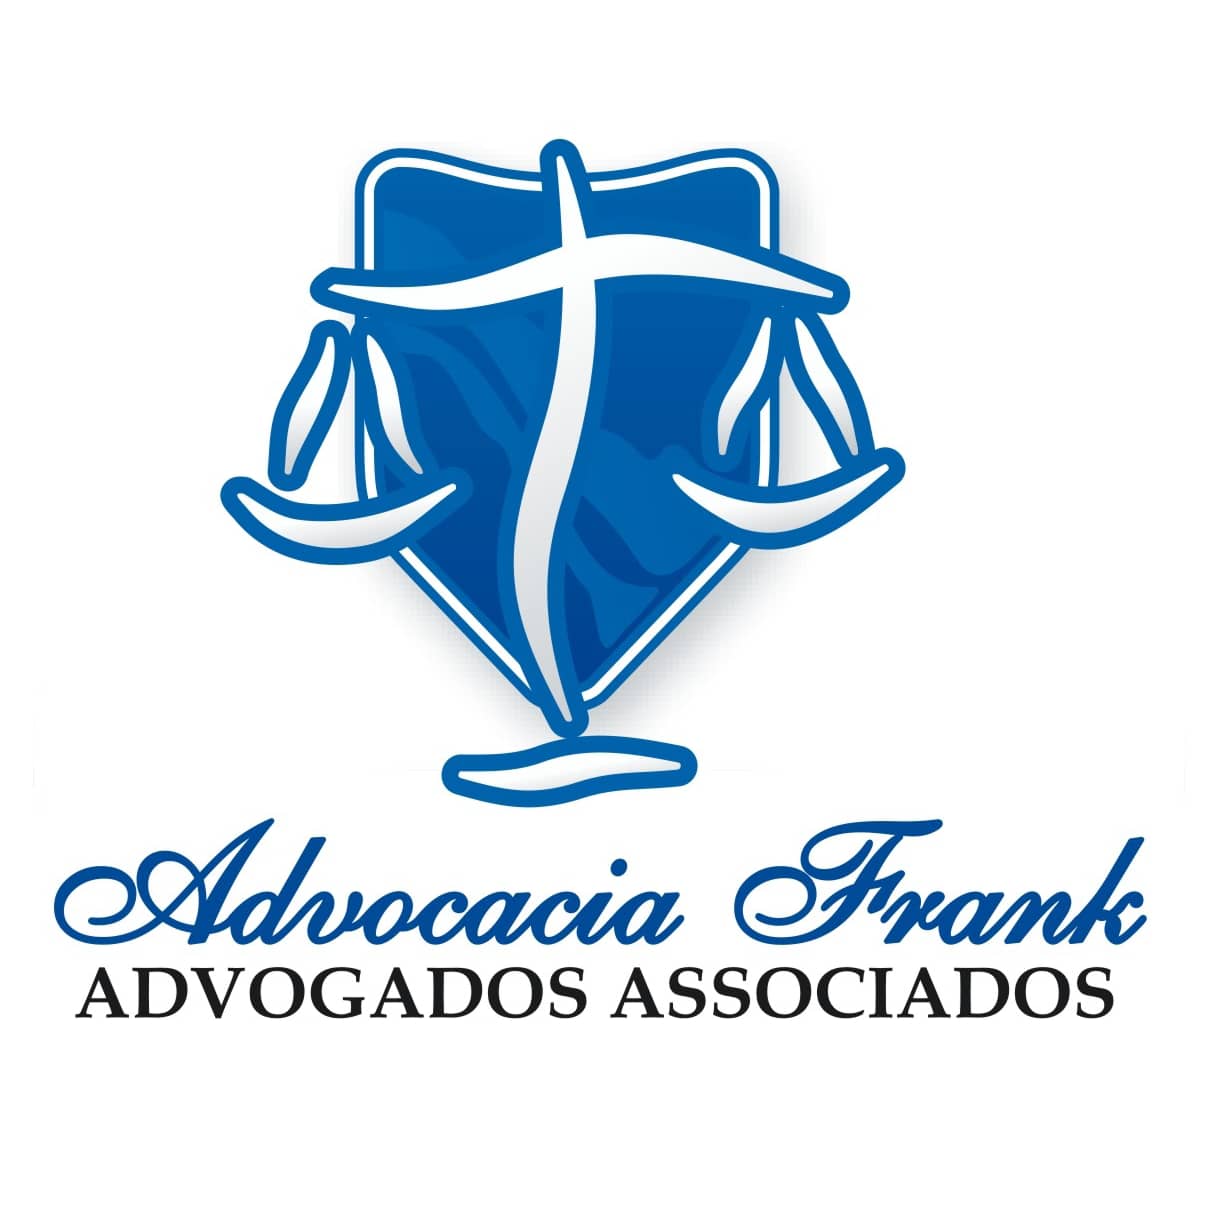  Advocacia Frank - Advogados Associados